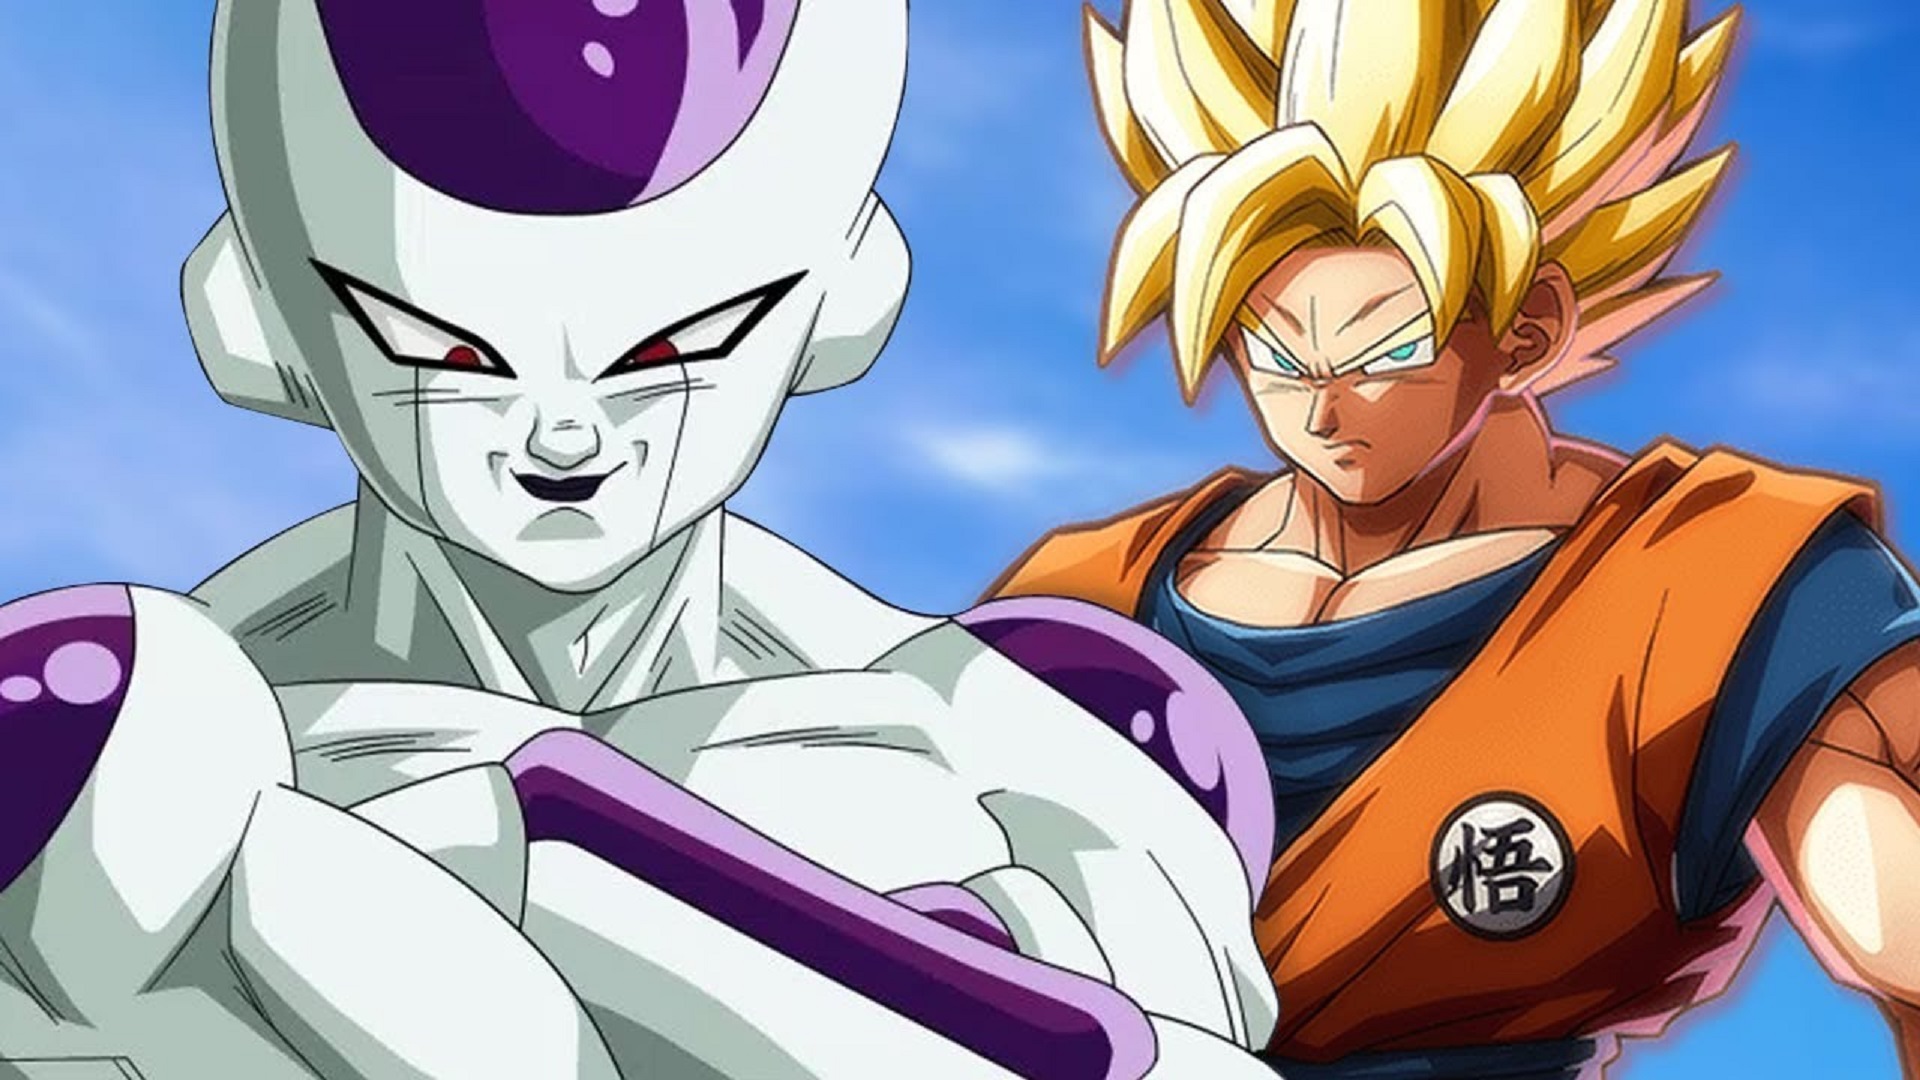 Fã de Dragon Ball Super fez uma arte do Goku contra o Freeza que ficou simplesmente incrível